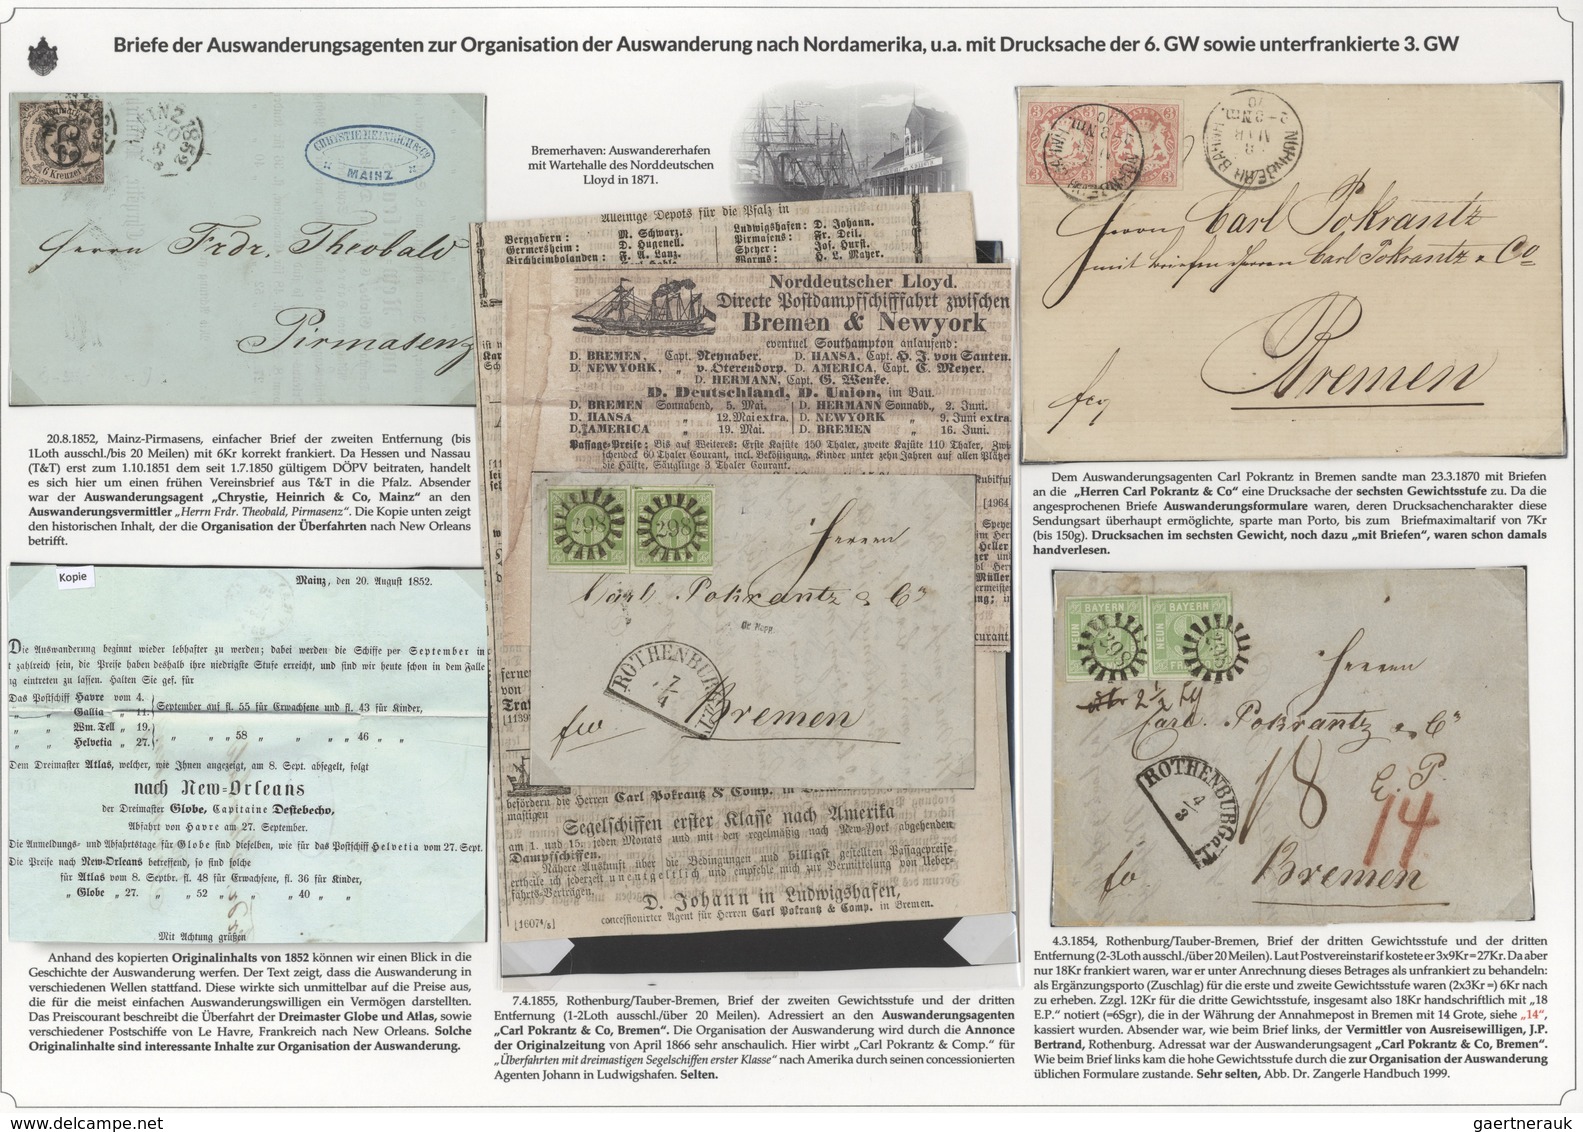 01142 Bayern - Marken und Briefe: 1806/1875 EINMALIGE AUSSTELLUNGS-SAMMLUNG: BAYERISCHE BRIEFPOST IM SPIEG